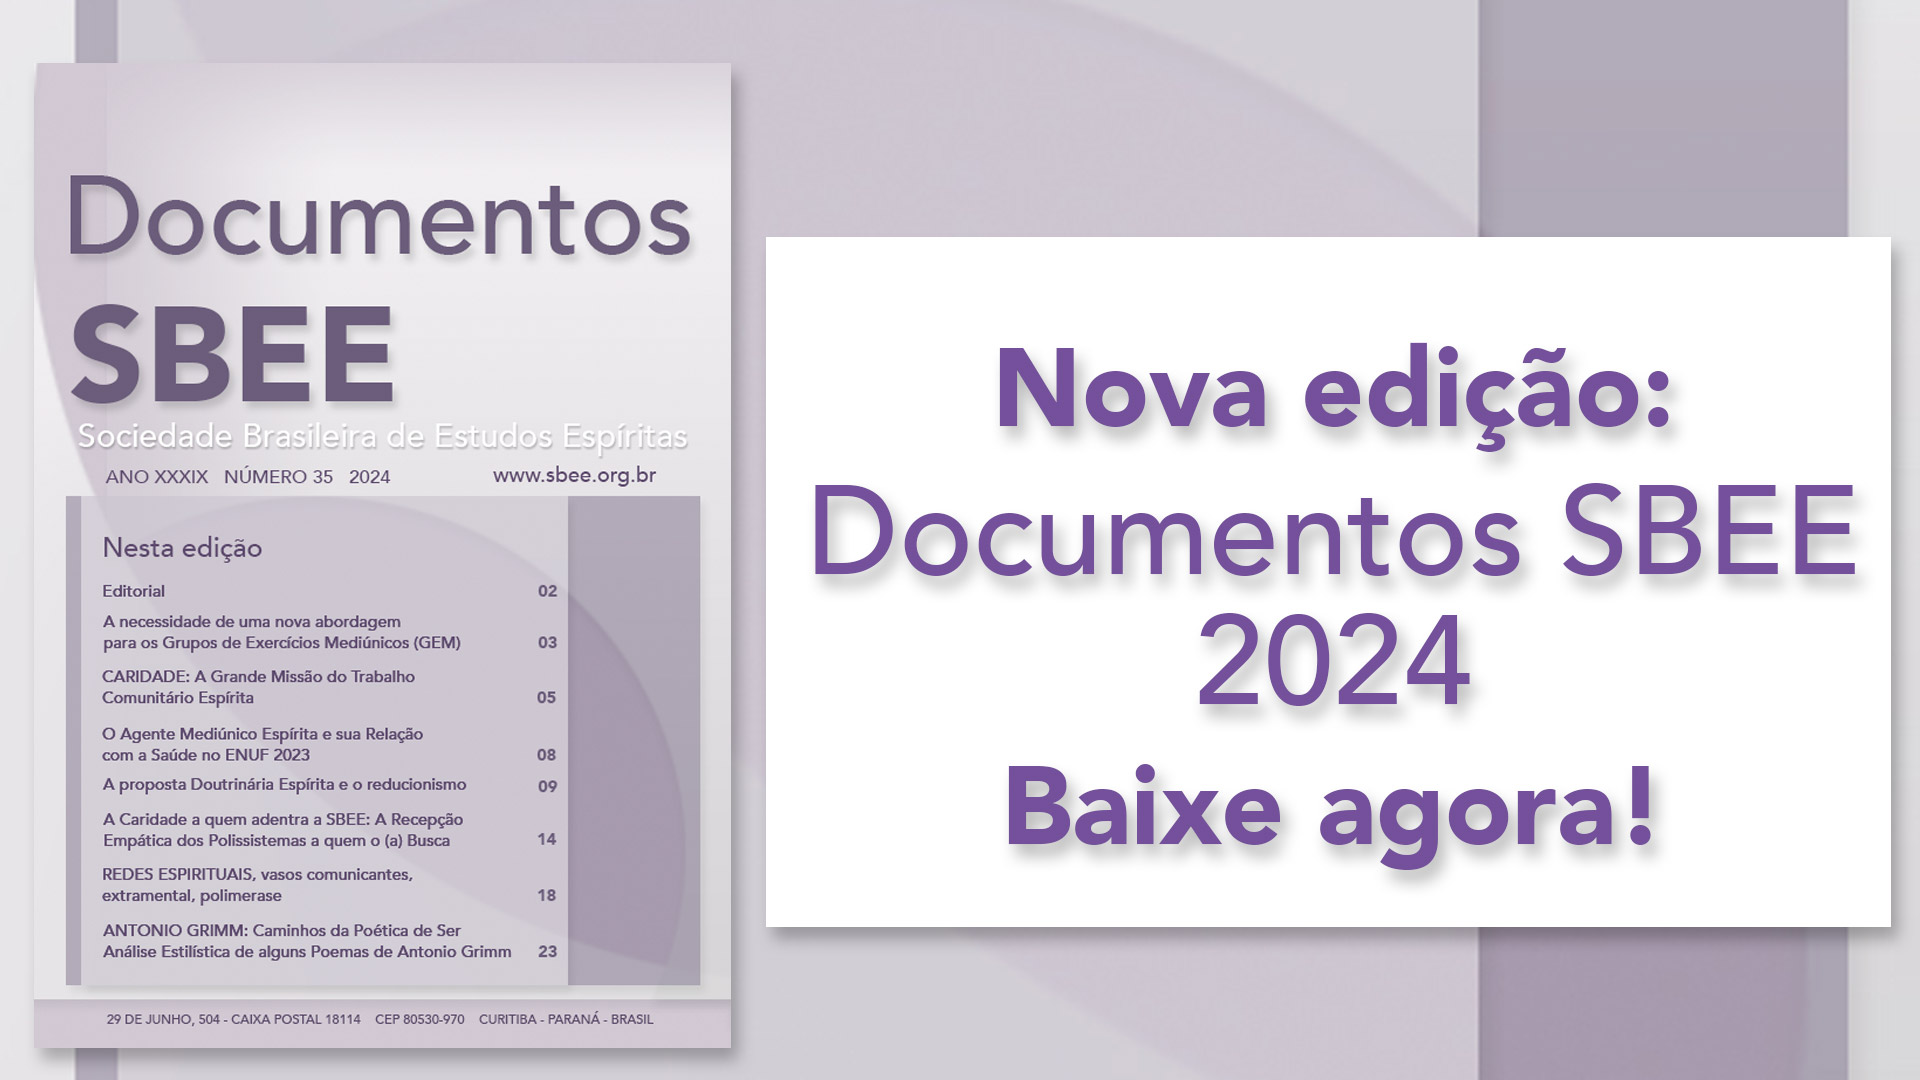 Documentos SBEE 2024